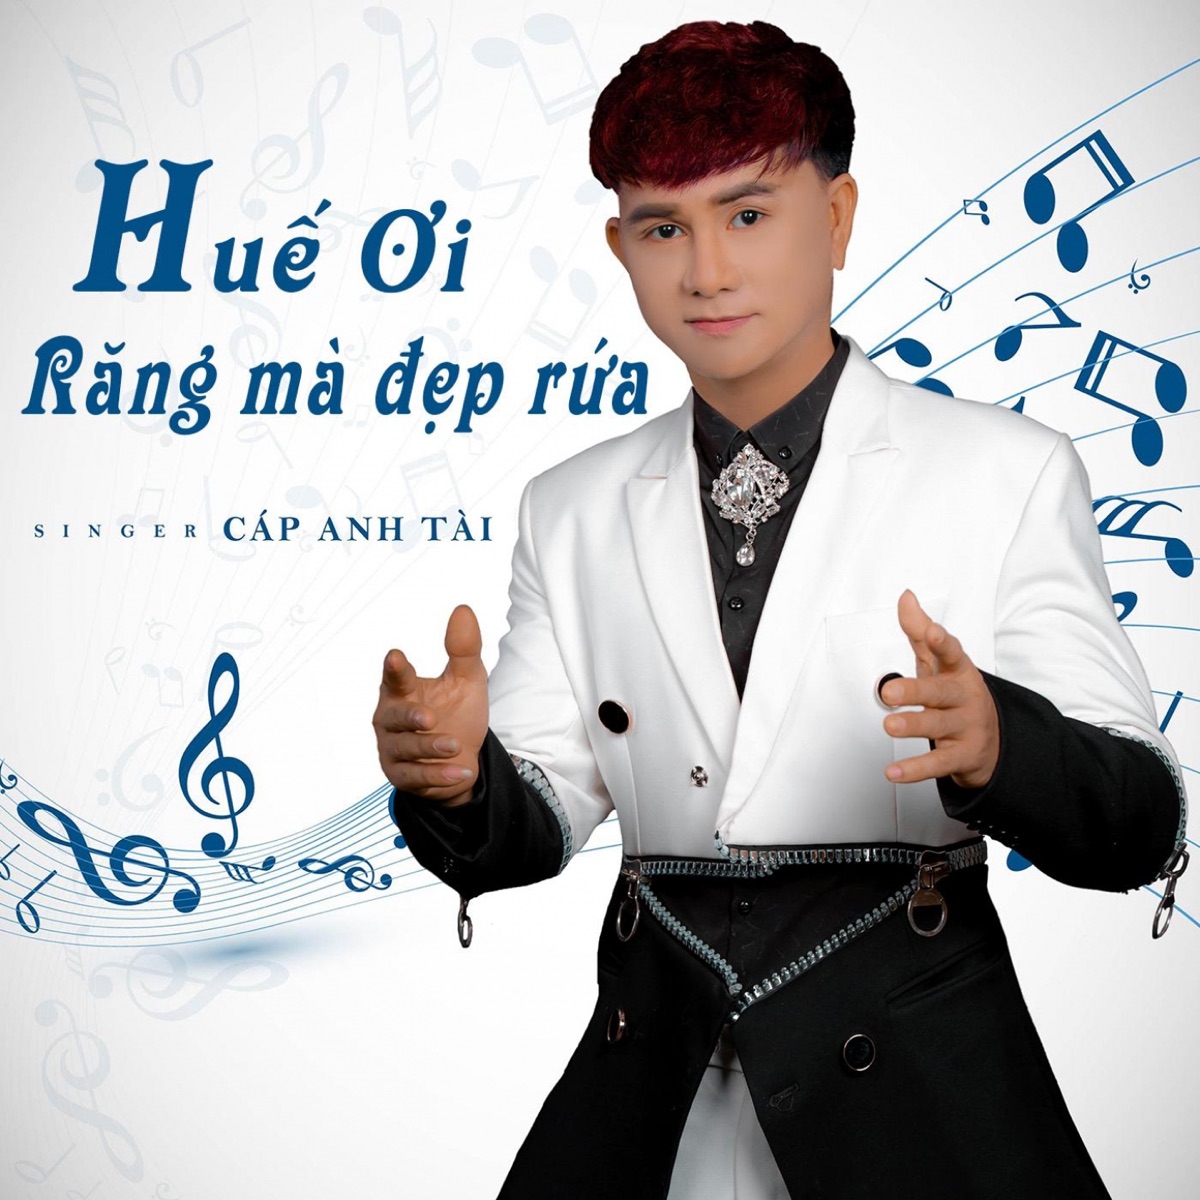 Em Yêu Anh Là Đúng Mà - Single by Cáp Anh Tài on Apple Music